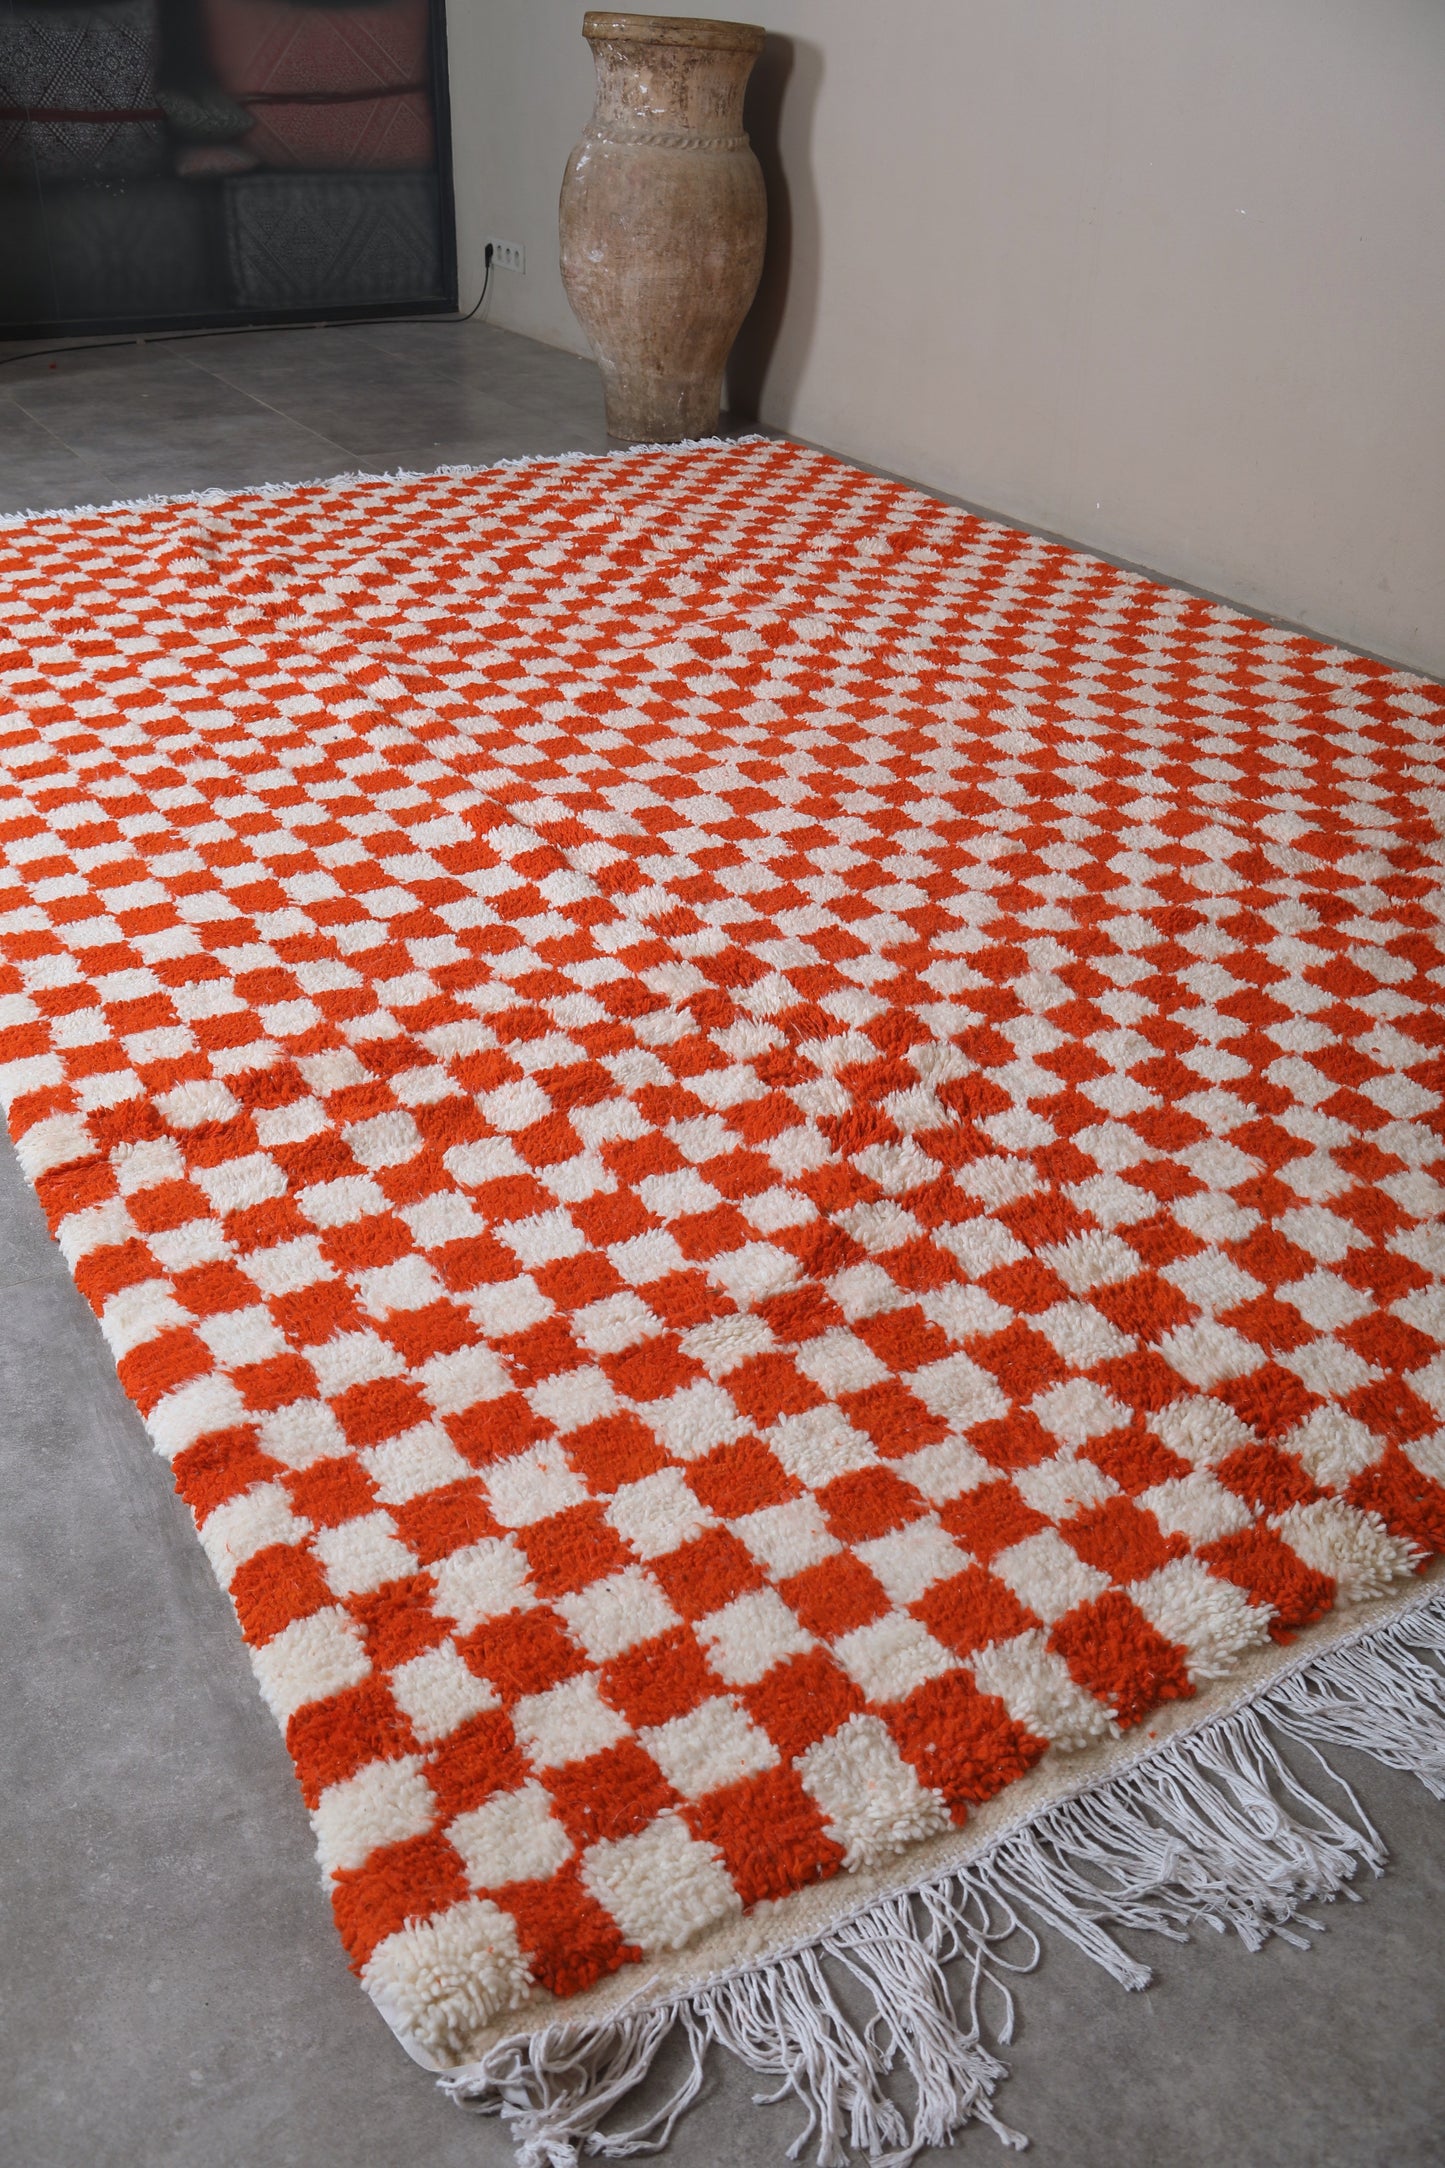 Moroccan rug 7.8 X 11.5 Feet